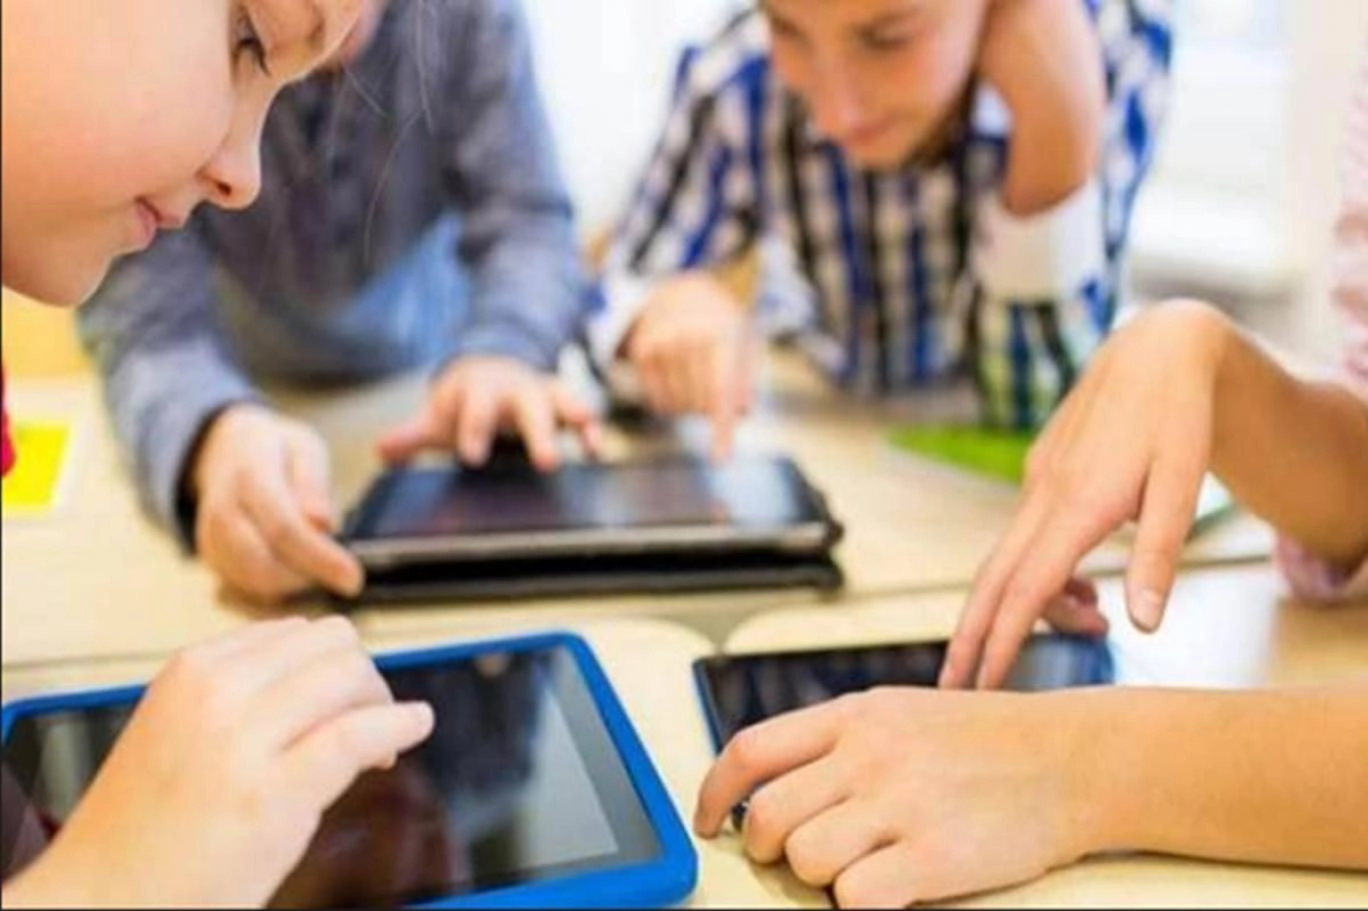 İnternet ve teknoloji kullanımının çocuklara etkileri